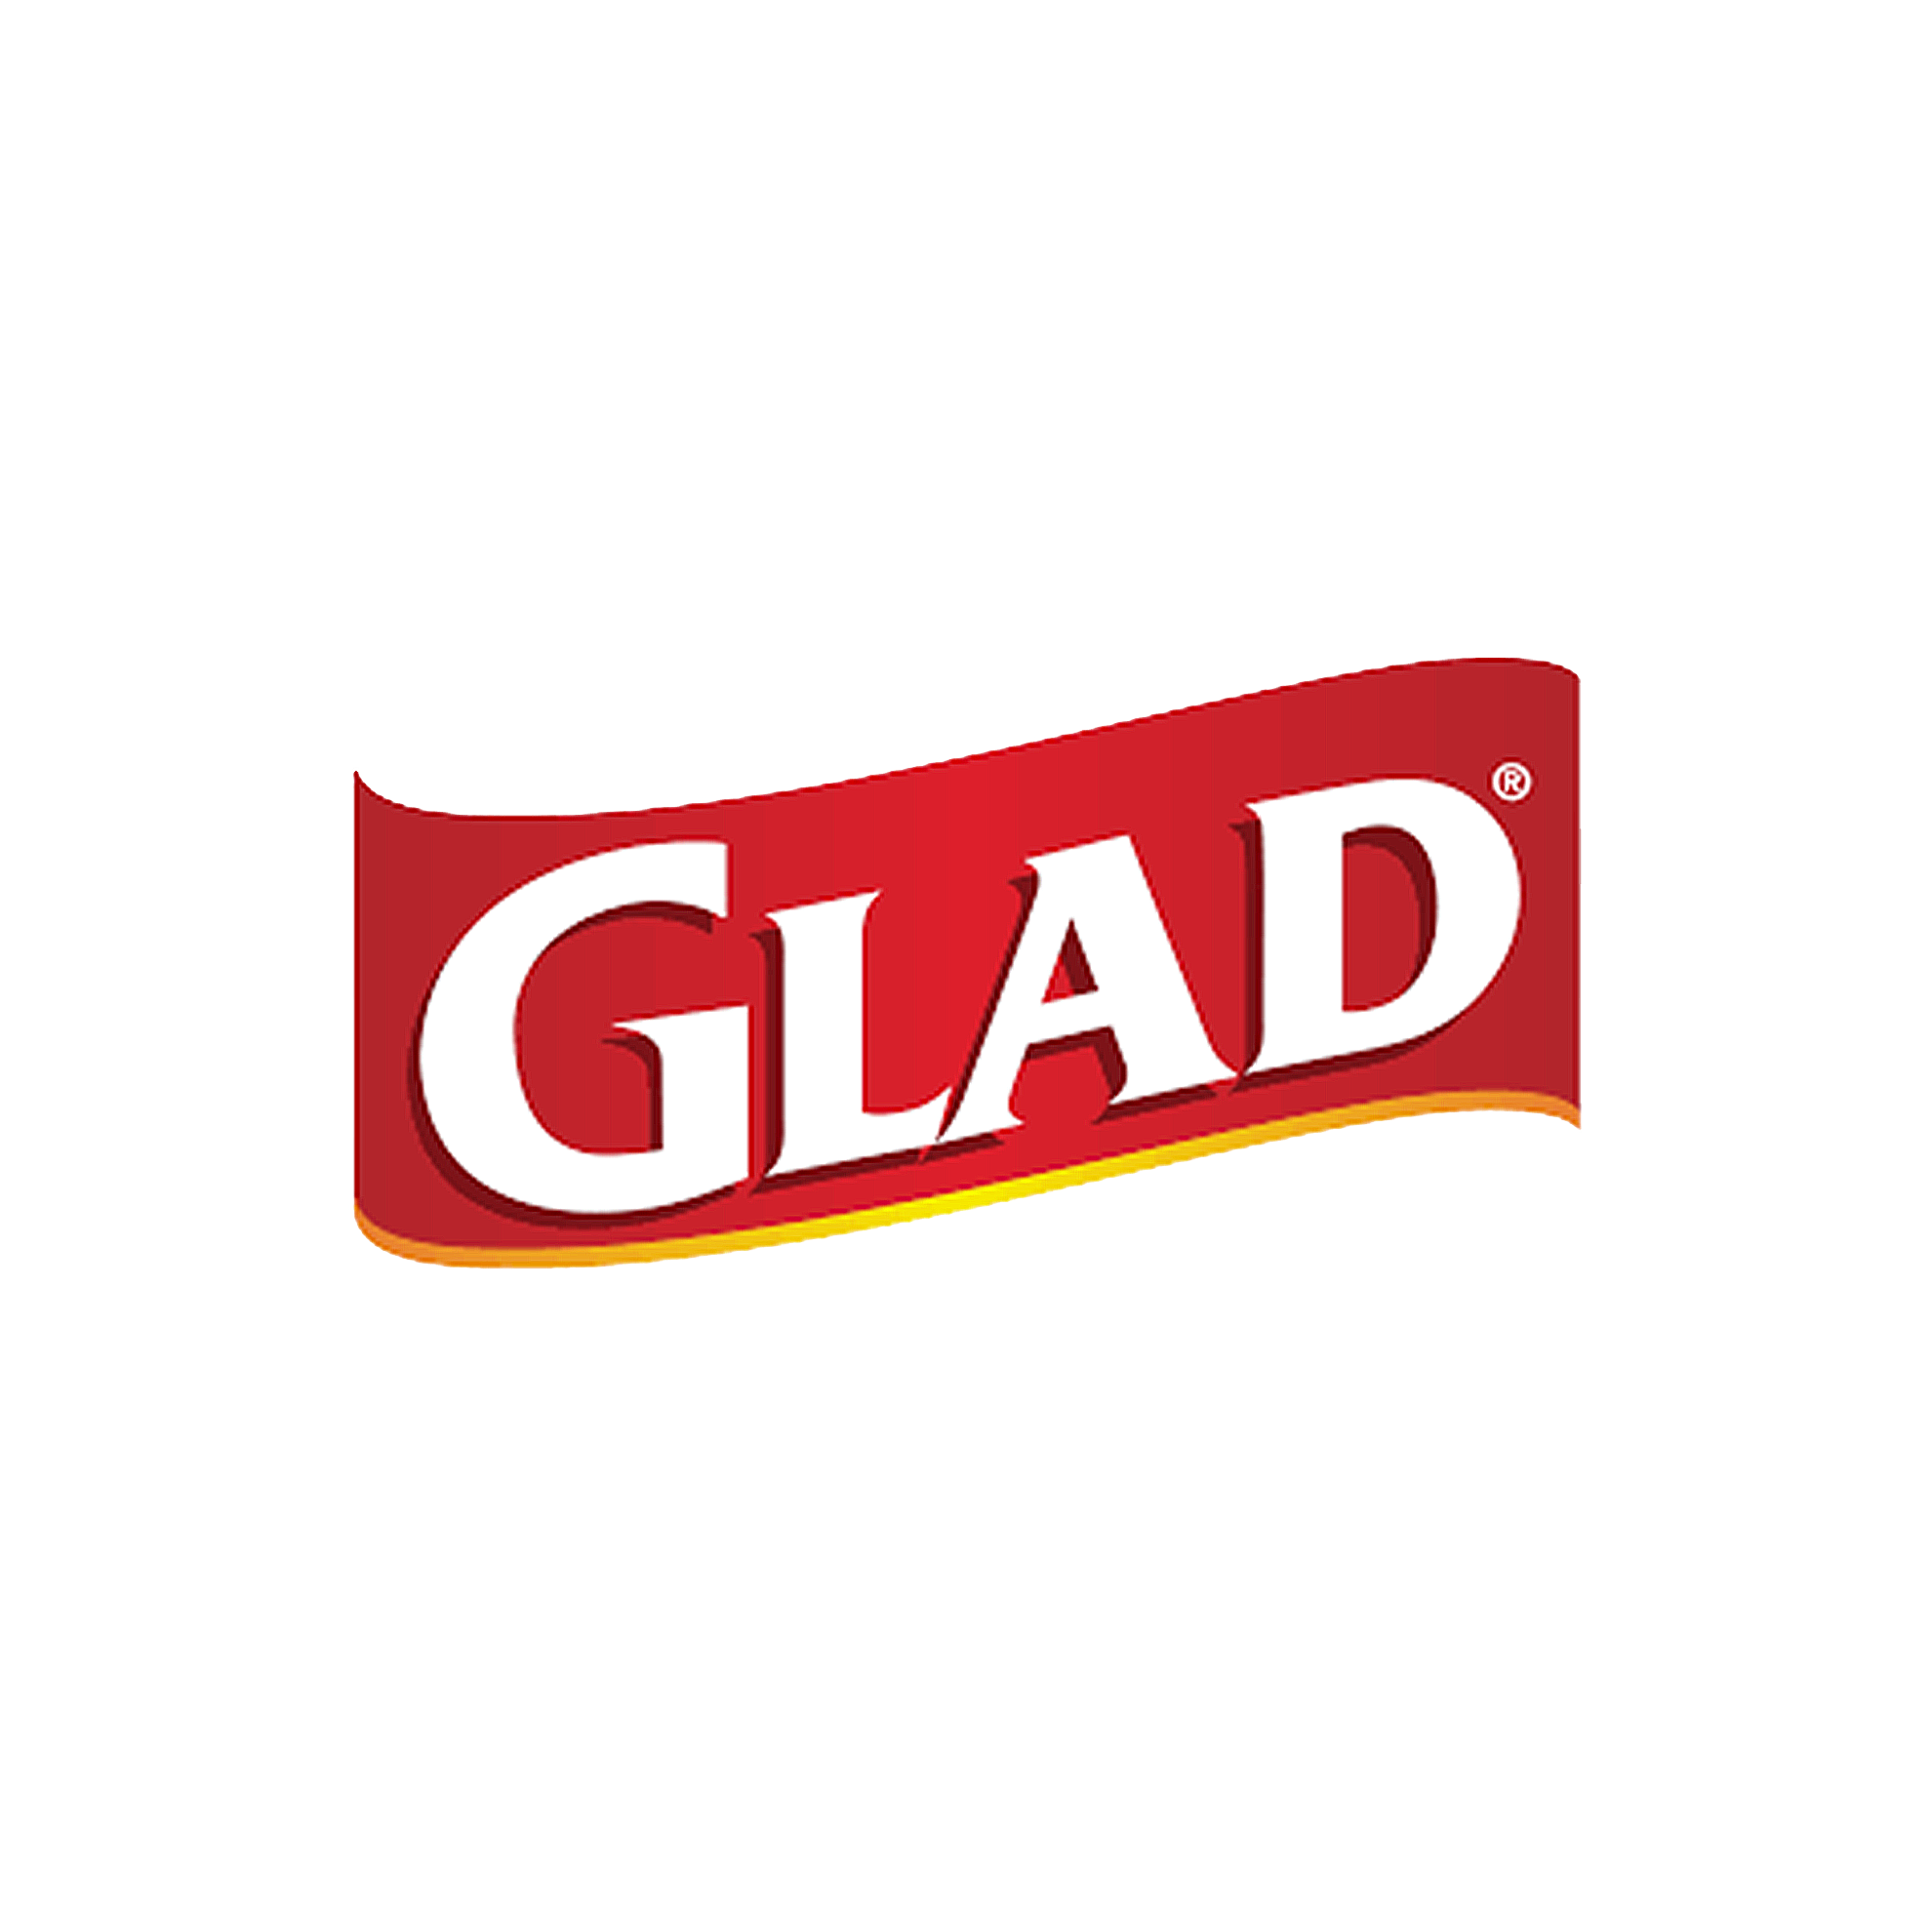 glad.png